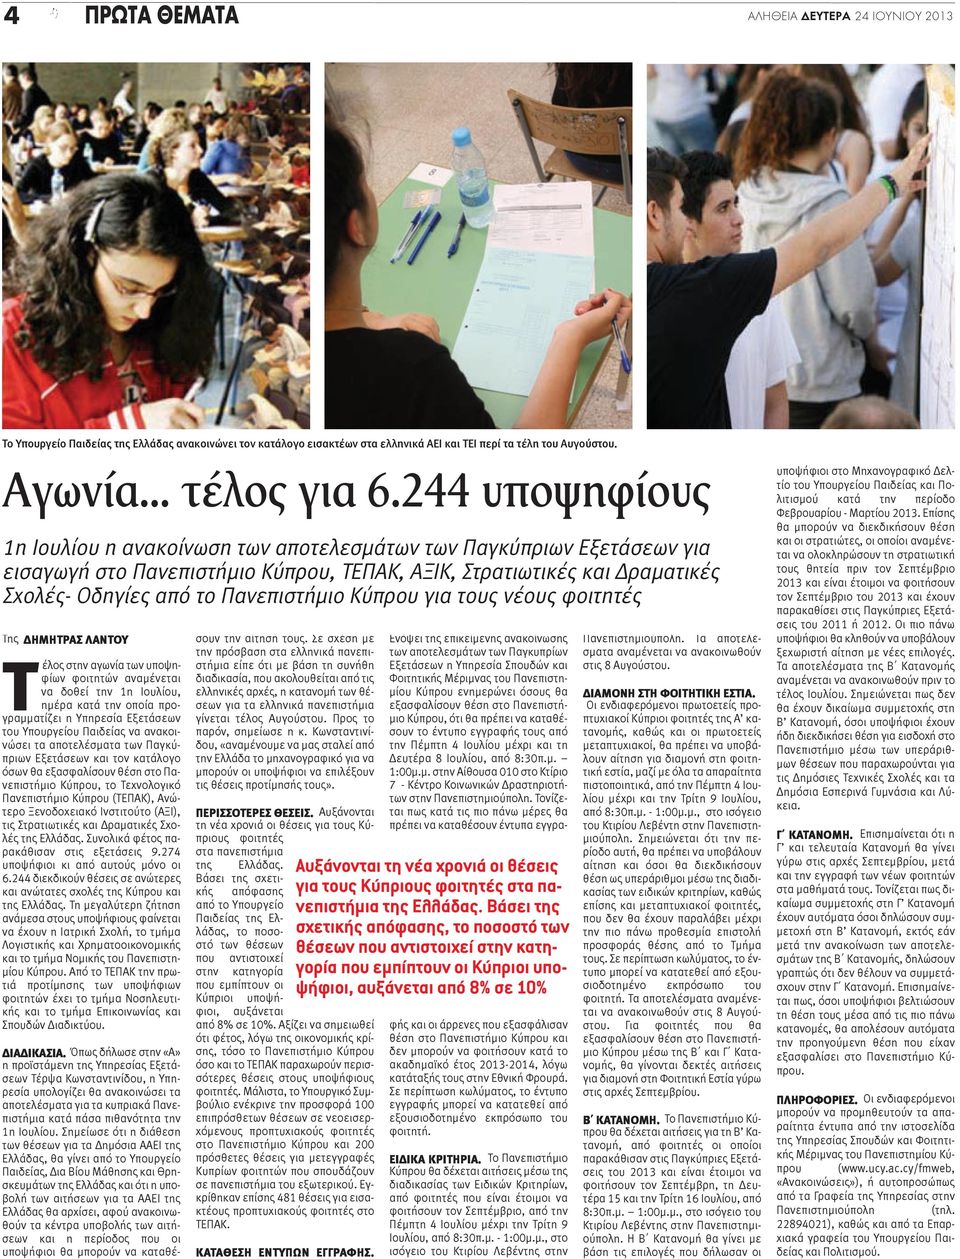 Κύπρου για τους νέους φοιτητές Της ΔΗΜΗΤΡΑΣ ΛΑΝΤΟΥ Τέλος στην αγωνία των υποψηφίων φοιτητών αναμένεται να δοθεί την 1η Ιουλίου, ημέρα κατά την οποία προγραμματίζει η Υπηρεσία Εξετάσεων του Υπουργείου